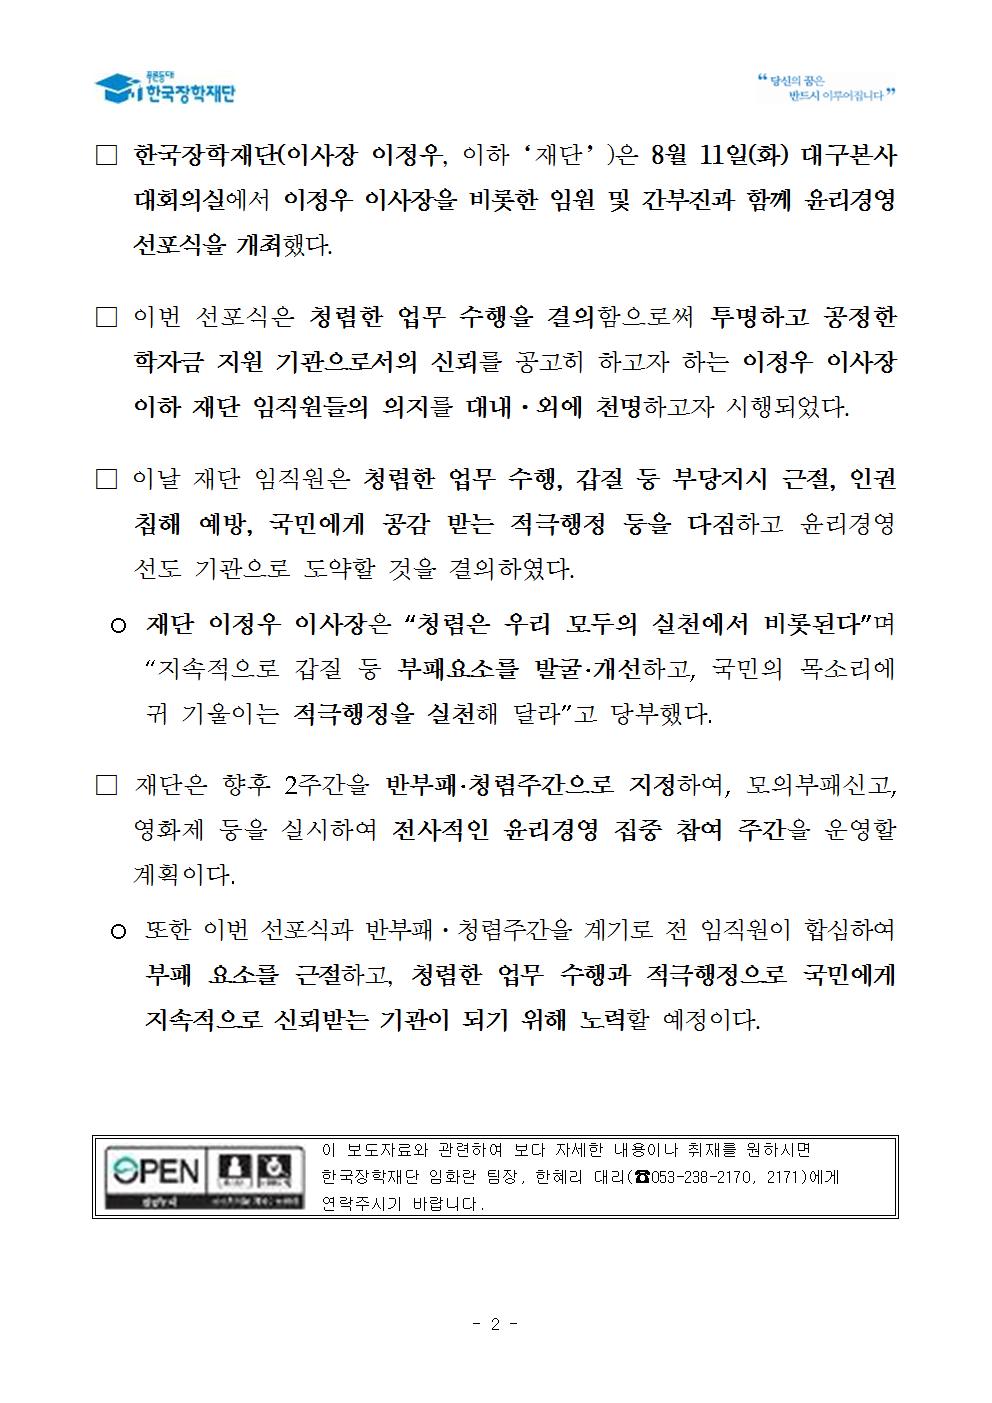 08-12(수)[보도자료] 한국장학재단, “윤리경영 선포식” 개최002.jpg